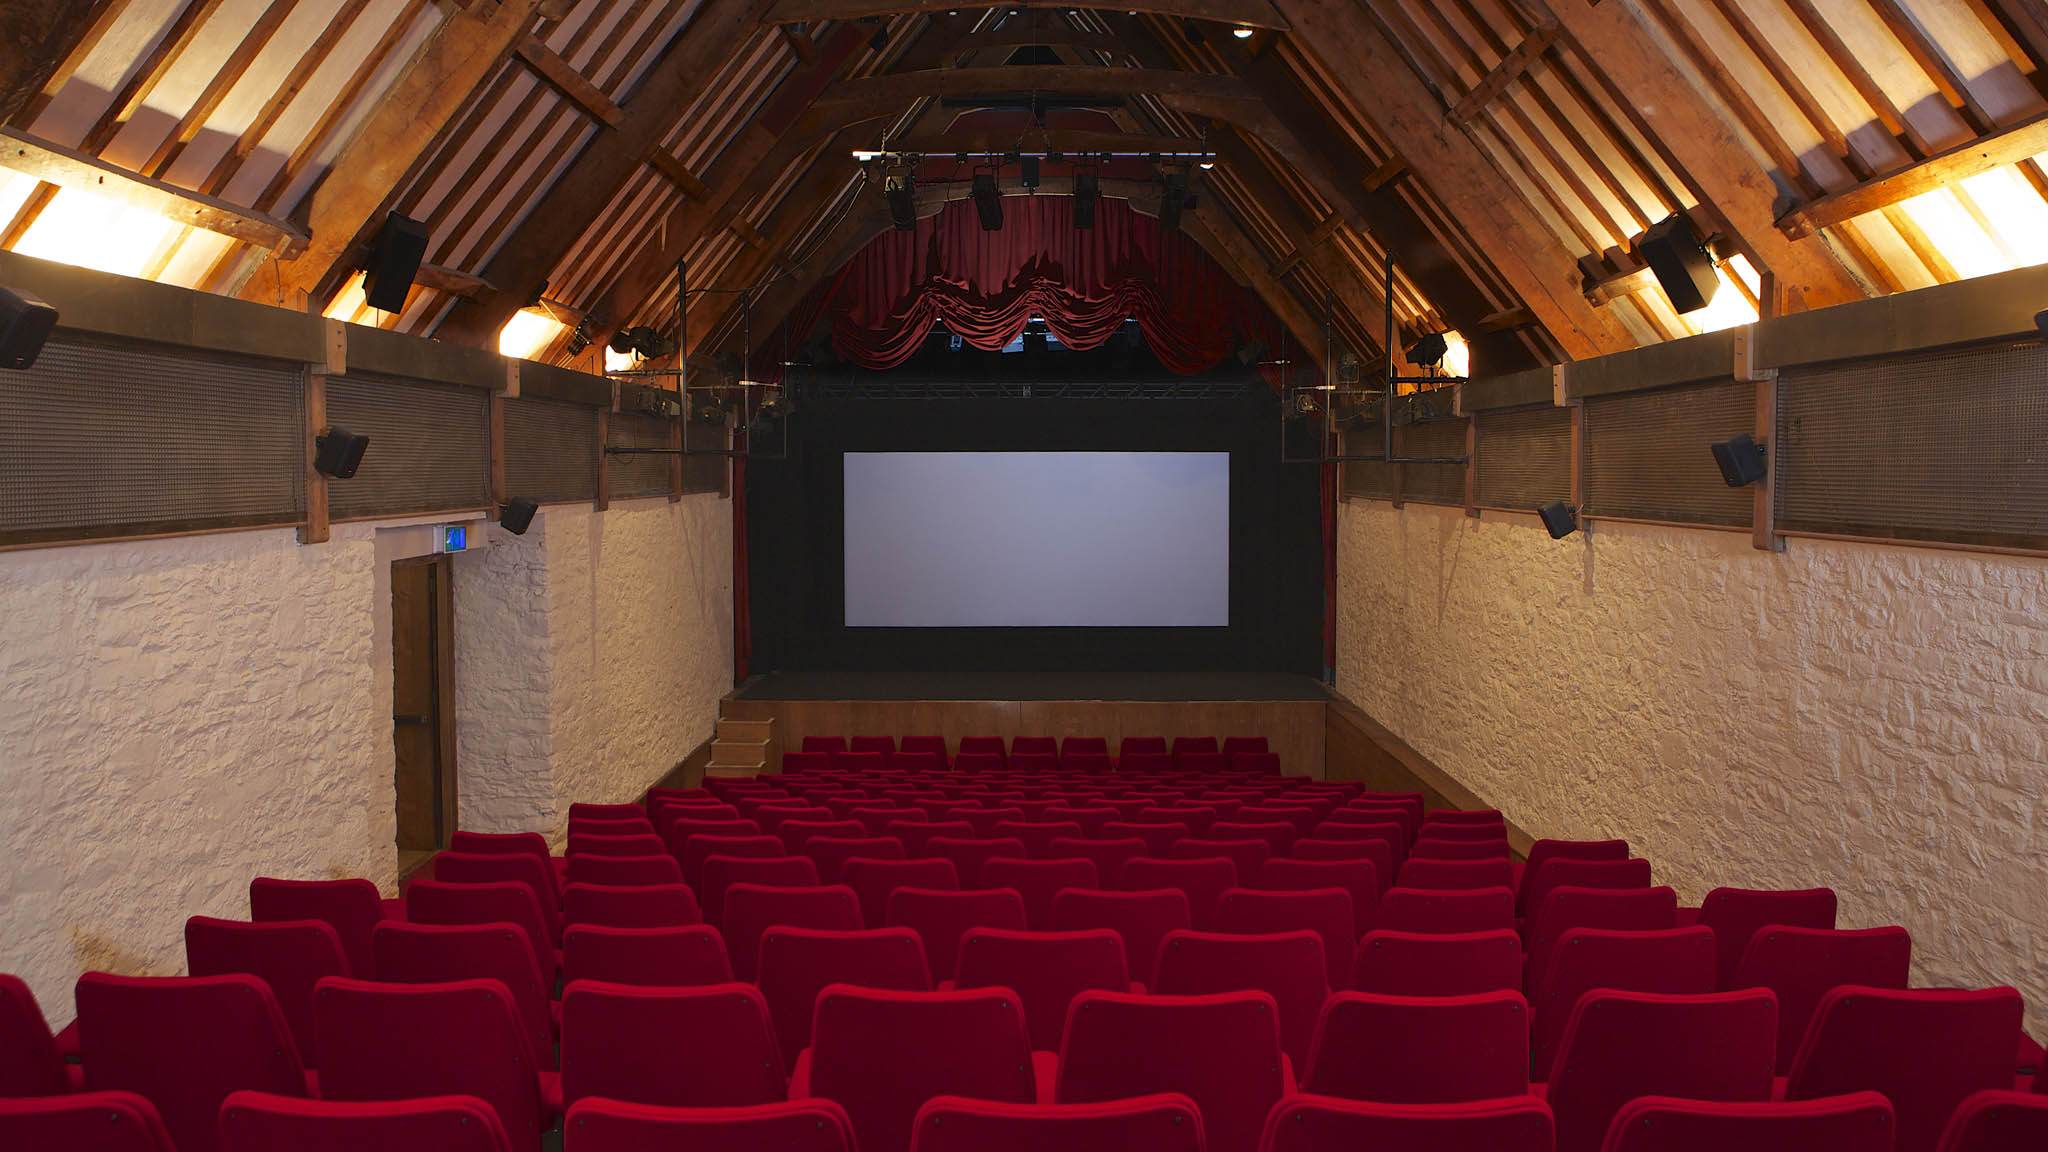 Barn Cinema interior